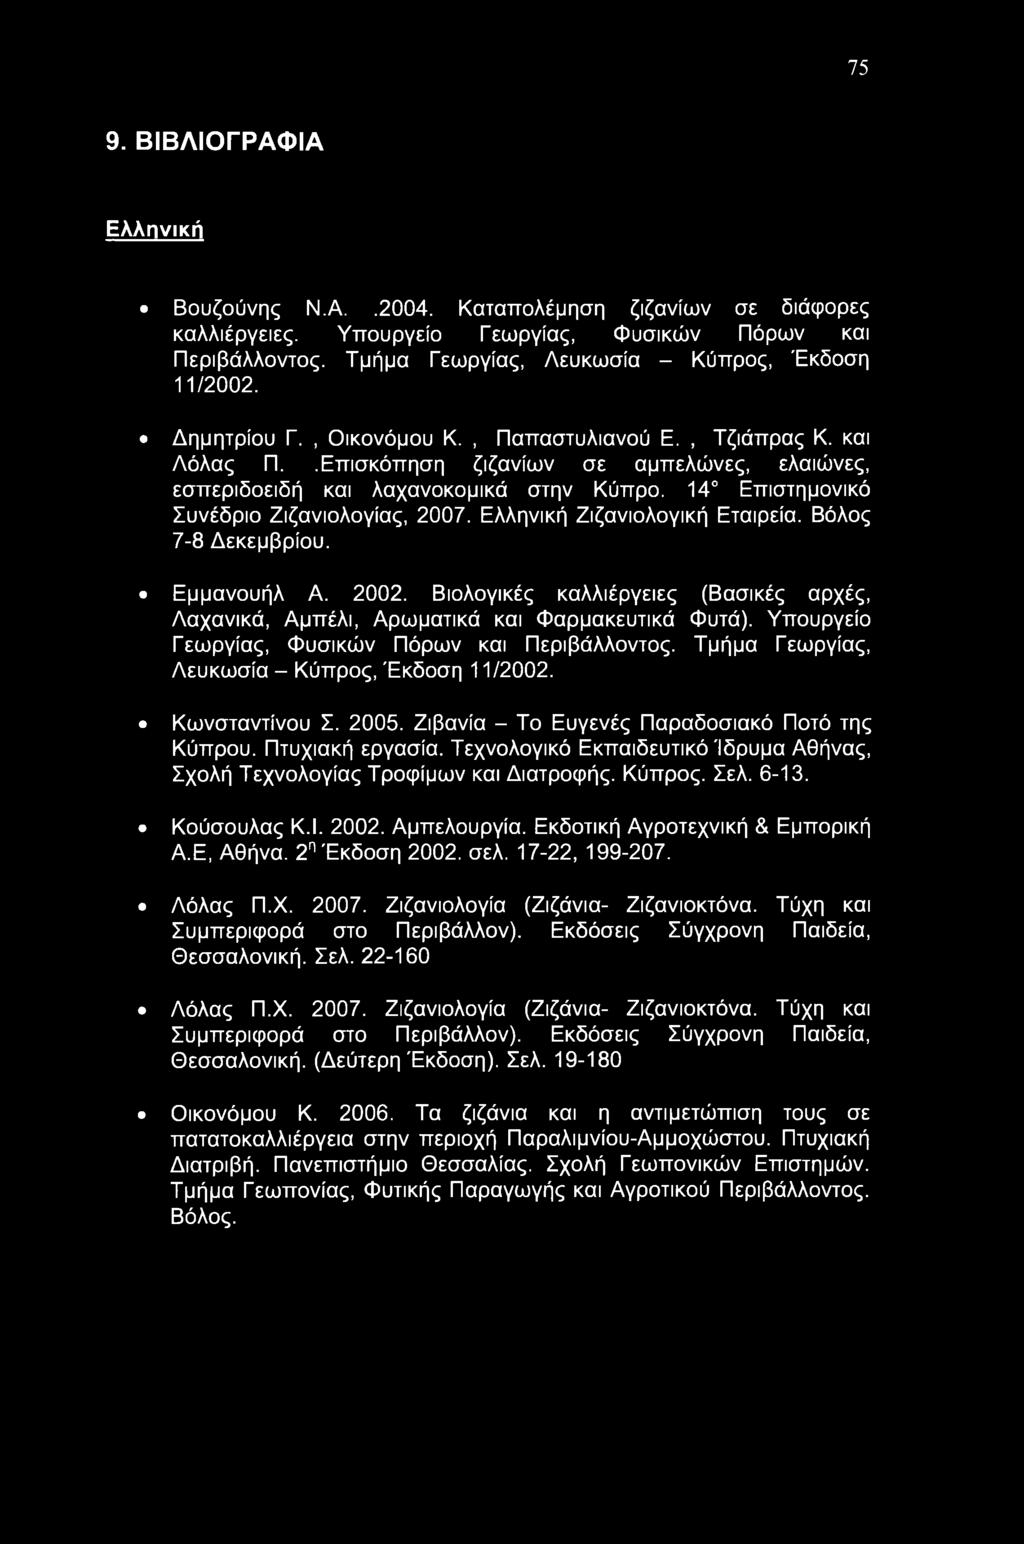 14 Επιστημονικό Συνέδριο Ζιζανιολογίας, 2007. Ελληνική Ζιζανιολογική Εταιρεία. Βόλος 7-8 Δεκεμβρίου. Εμμανουήλ Α. 2002.